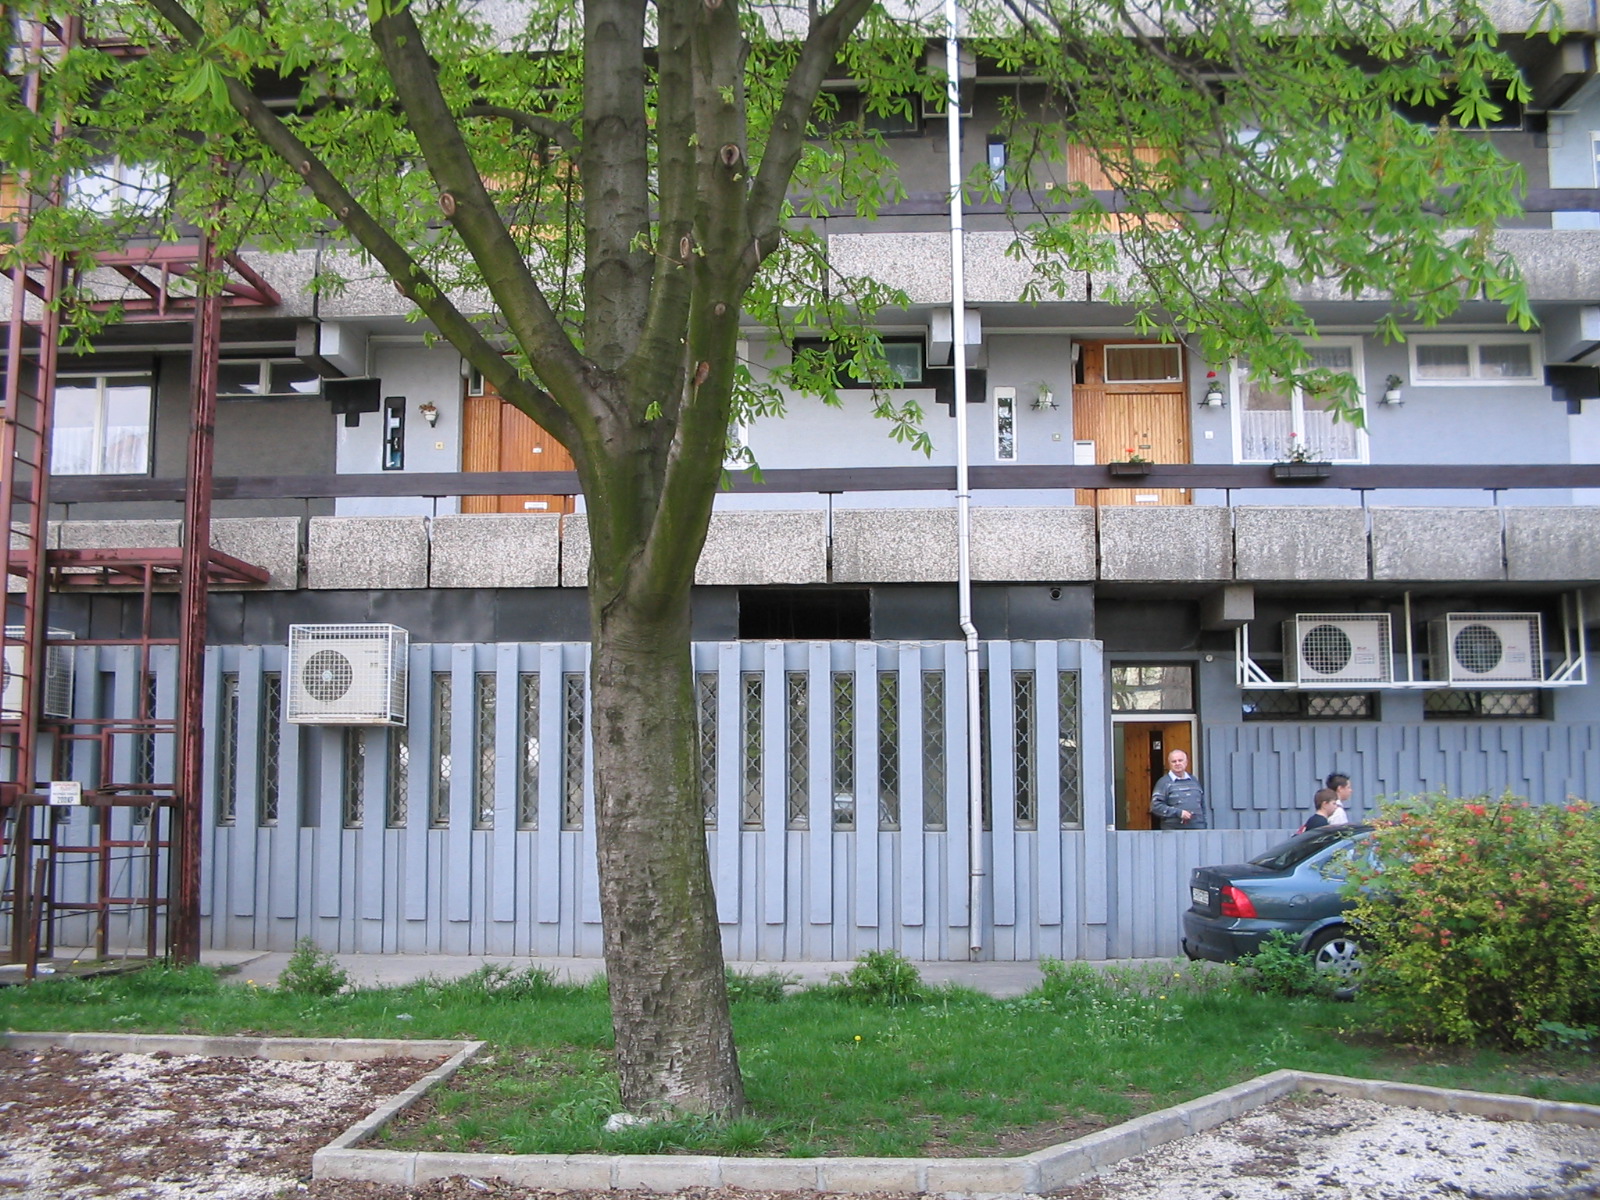 Vác, housing block and its environs